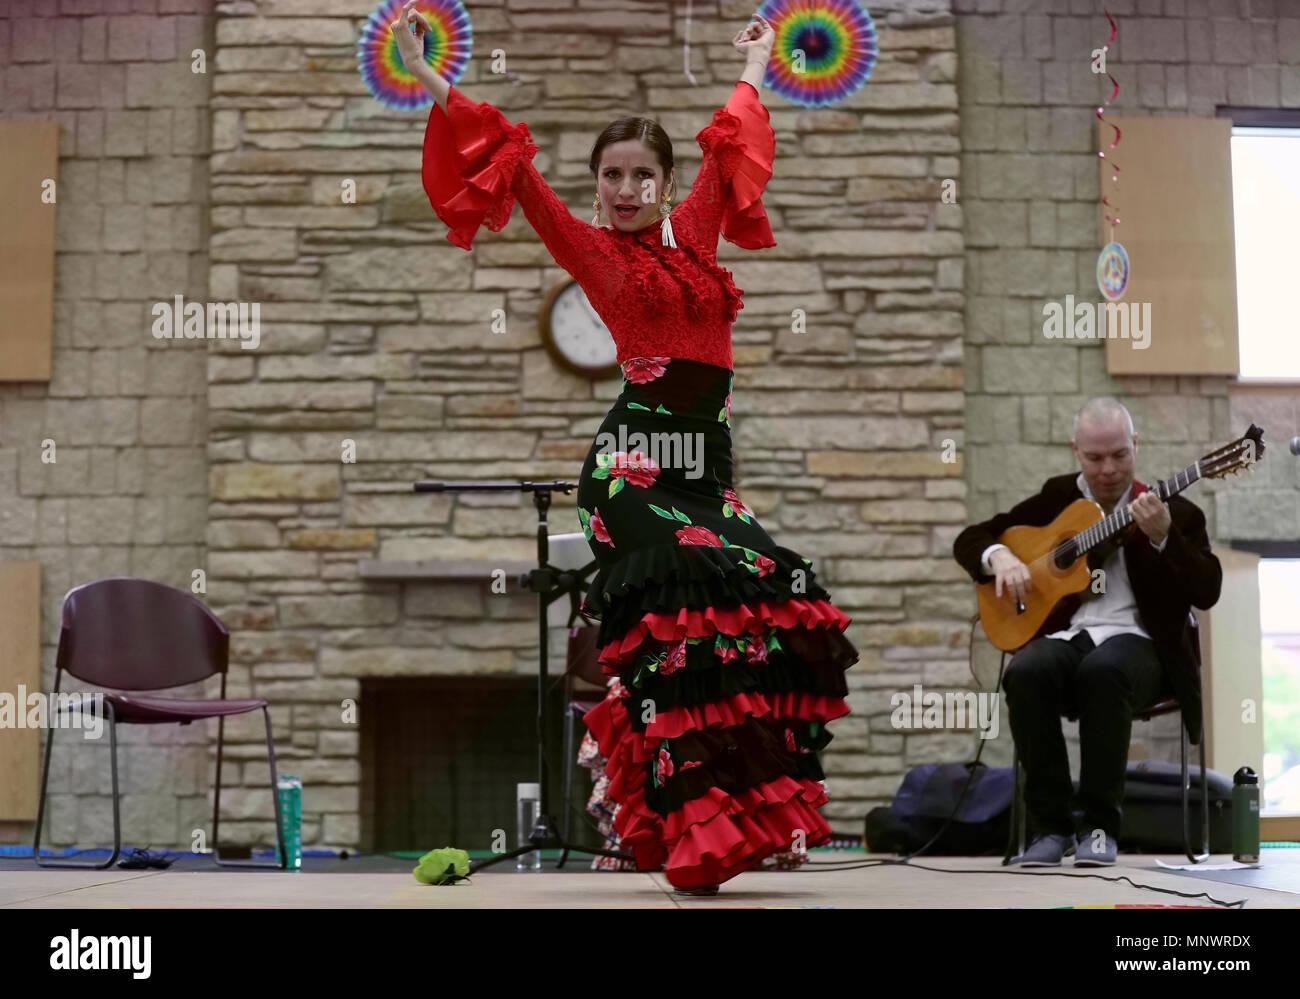 L'Illinois, USA. 19 mai, 2018. Une femme de la communauté de danse flamenco espagnol effectue au 28e Festival des Cultures à Skokie Skokie de l'Illinois, aux États-Unis, le 19 mai 2018. Credit : Wang Ping/Xinhua/Alamy Live News Banque D'Images